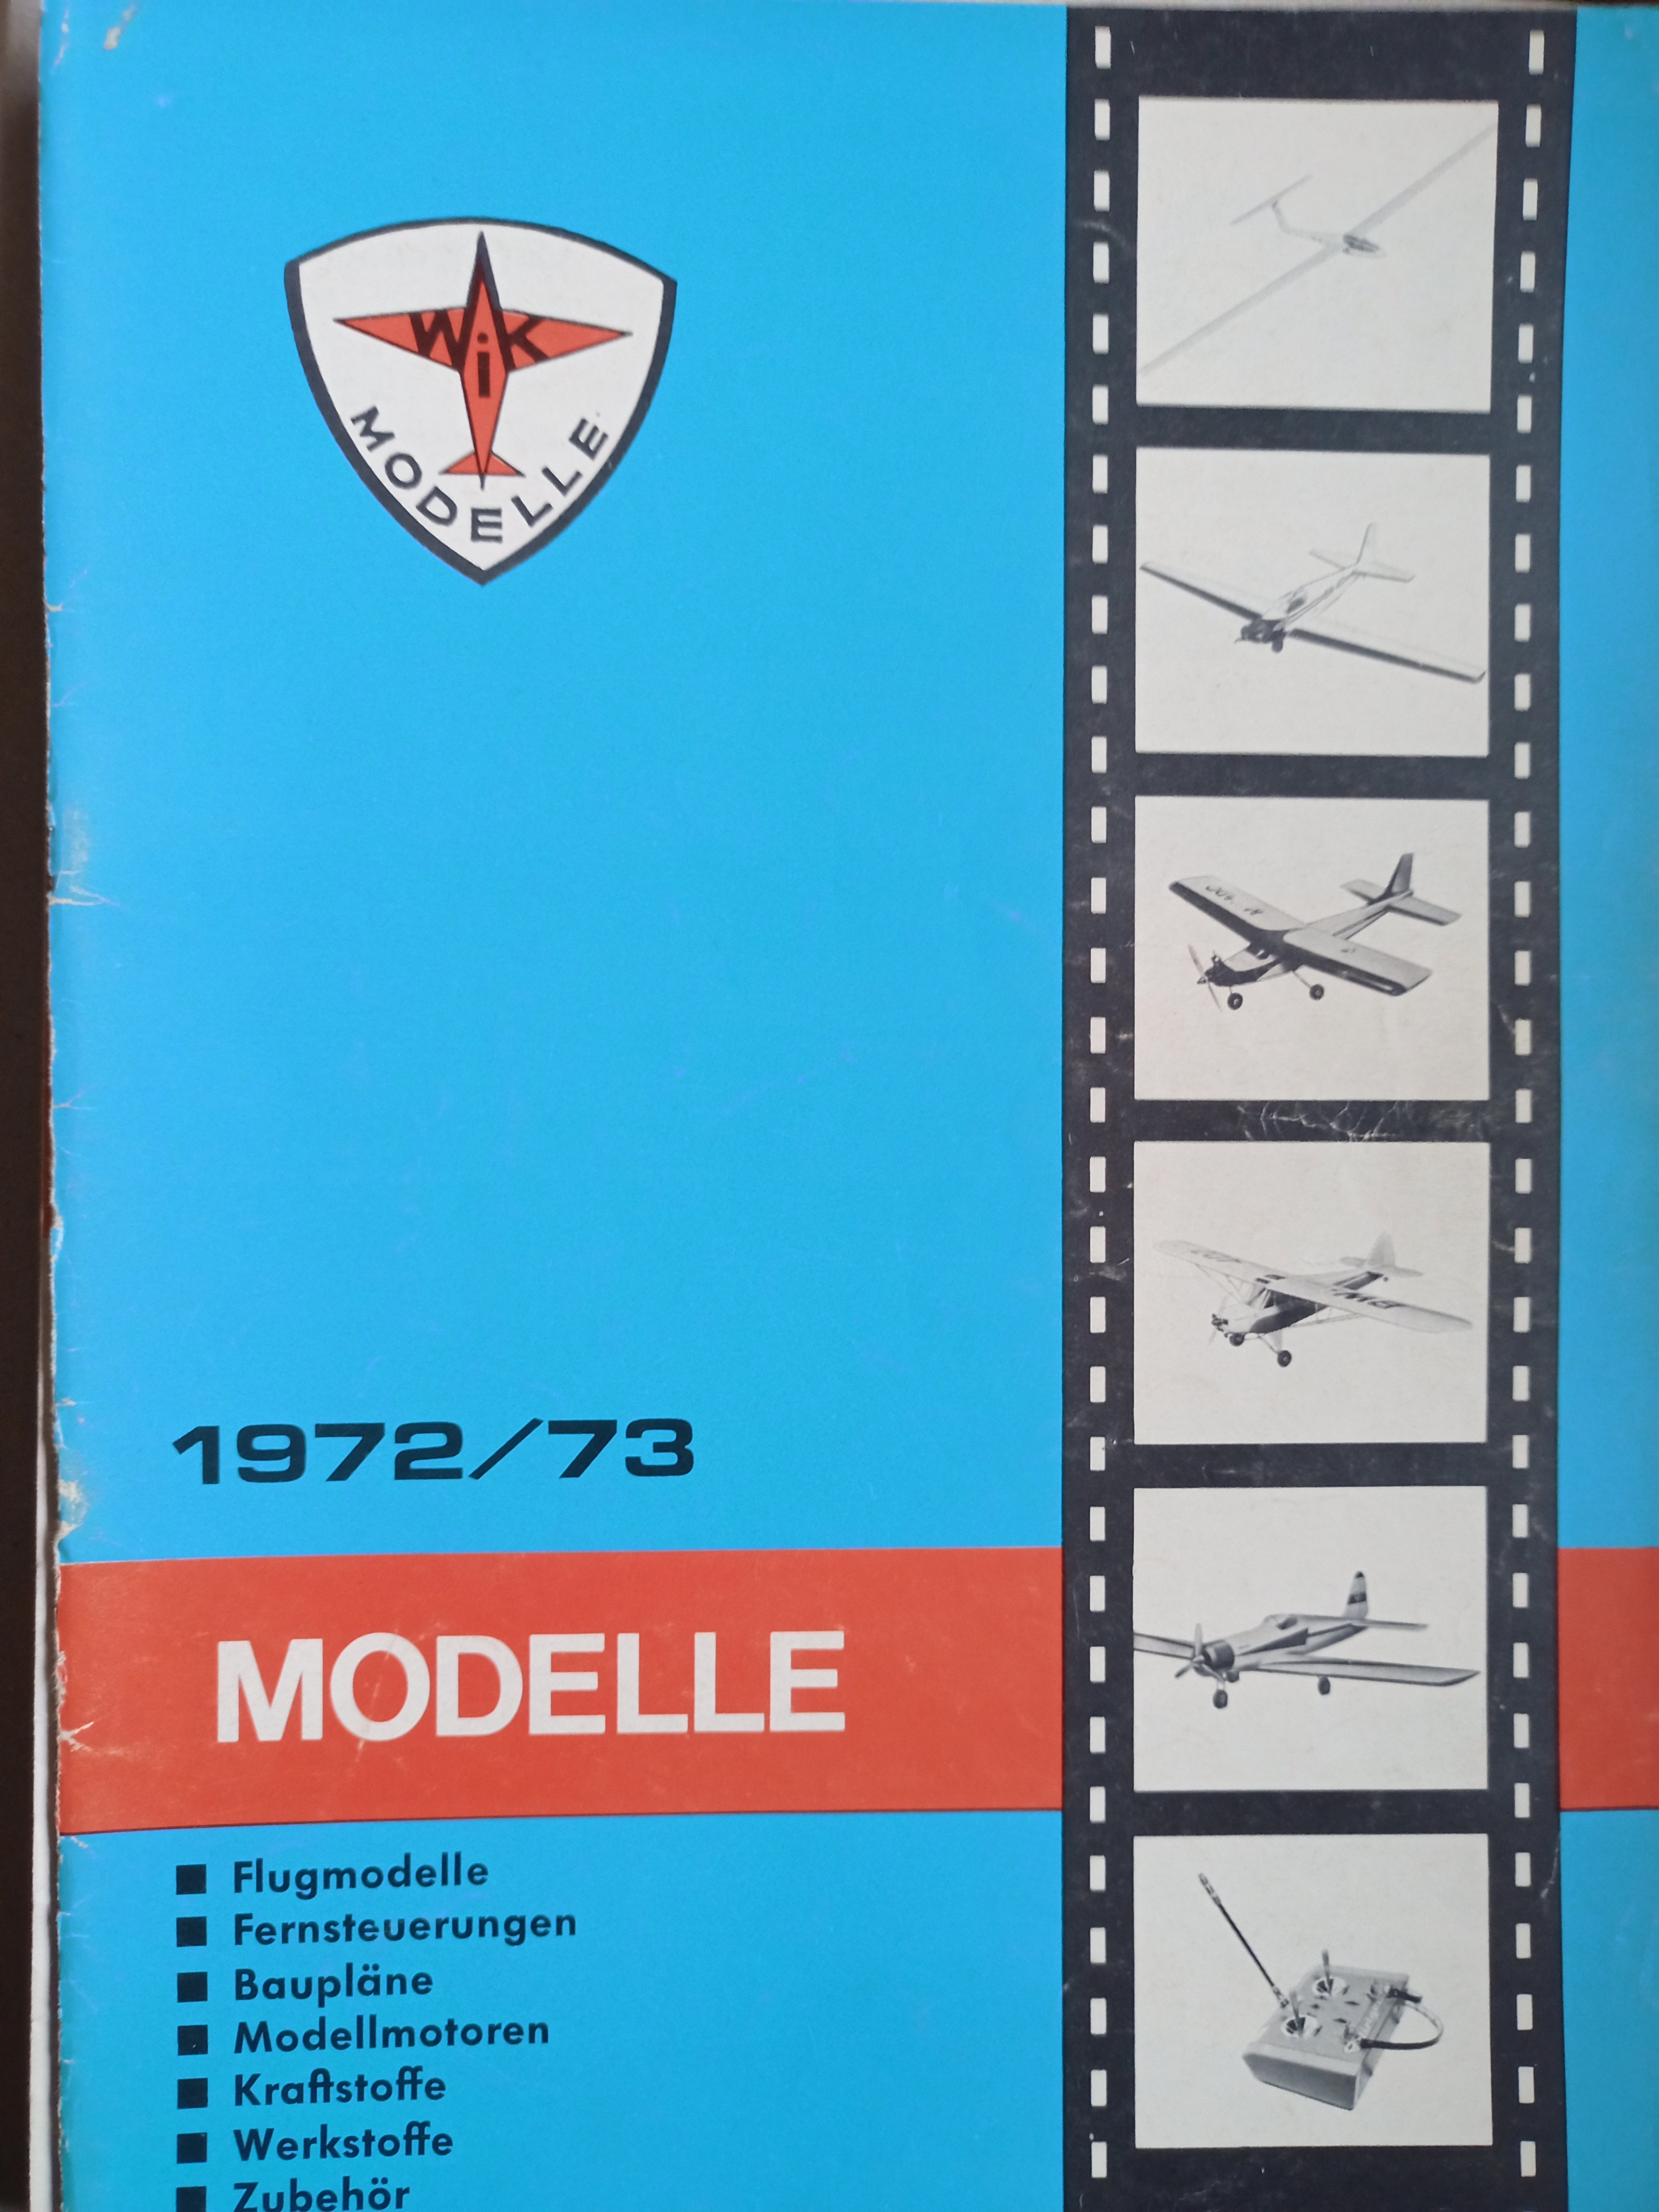 WIK Neuheiten 1972/73 (Deutsches Segelflugmuseum mit Modellflug CC BY-NC-SA)